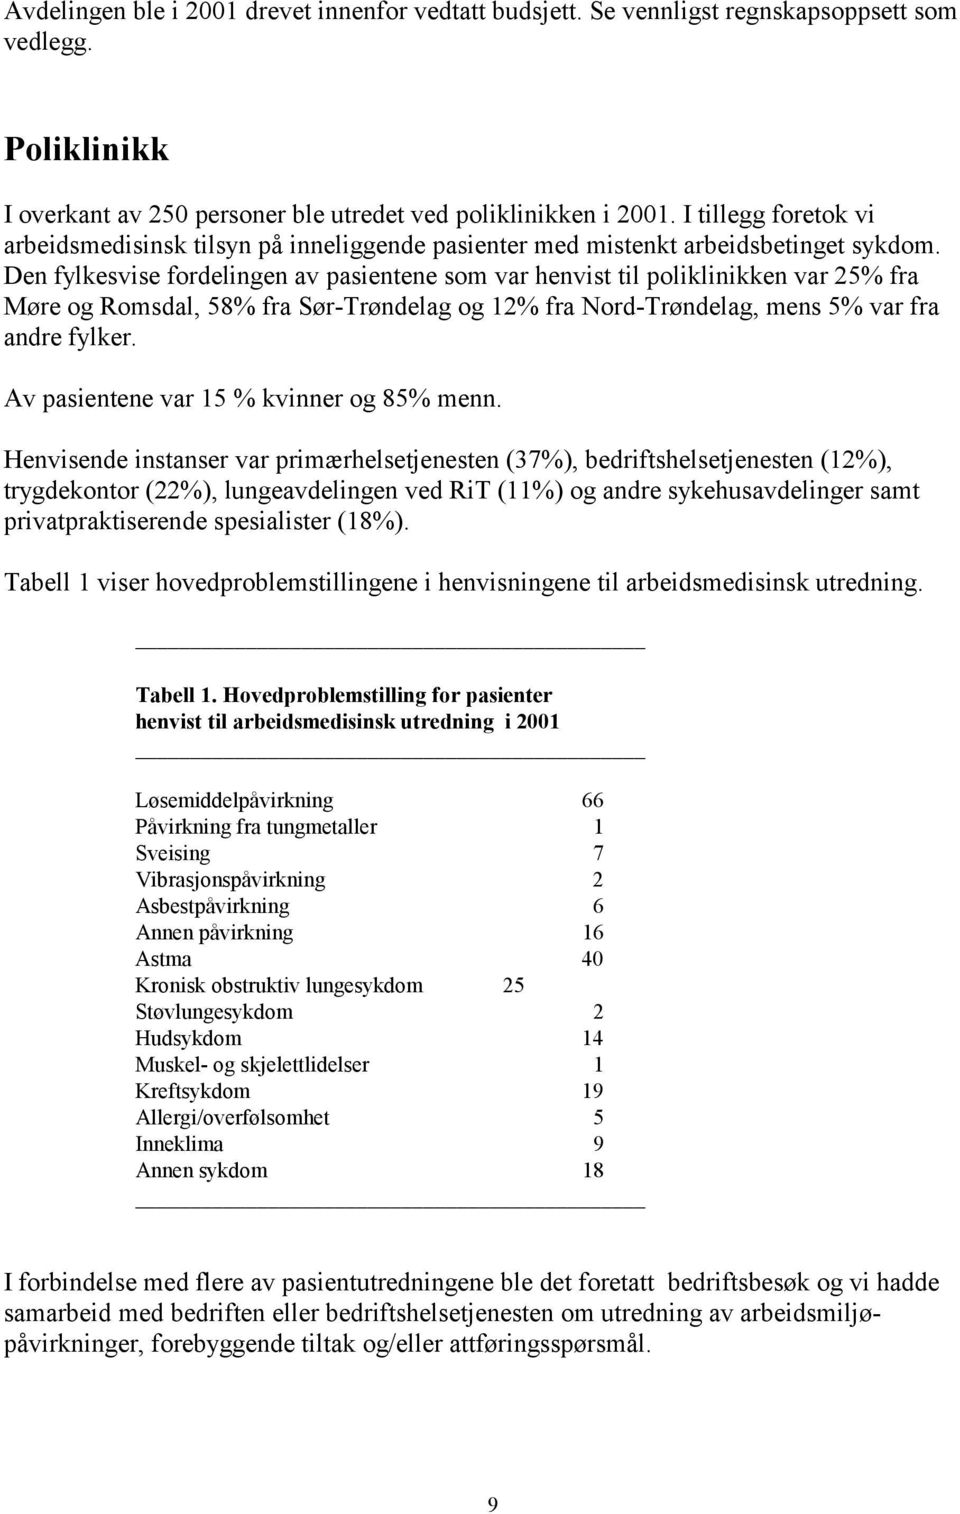 Den fylkesvise fordelingen av pasientene som var henvist til poliklinikken var 25% fra Møre og Romsdal, 58% fra Sør-Trøndelag og 12% fra Nord-Trøndelag, mens 5% var fra andre fylker.